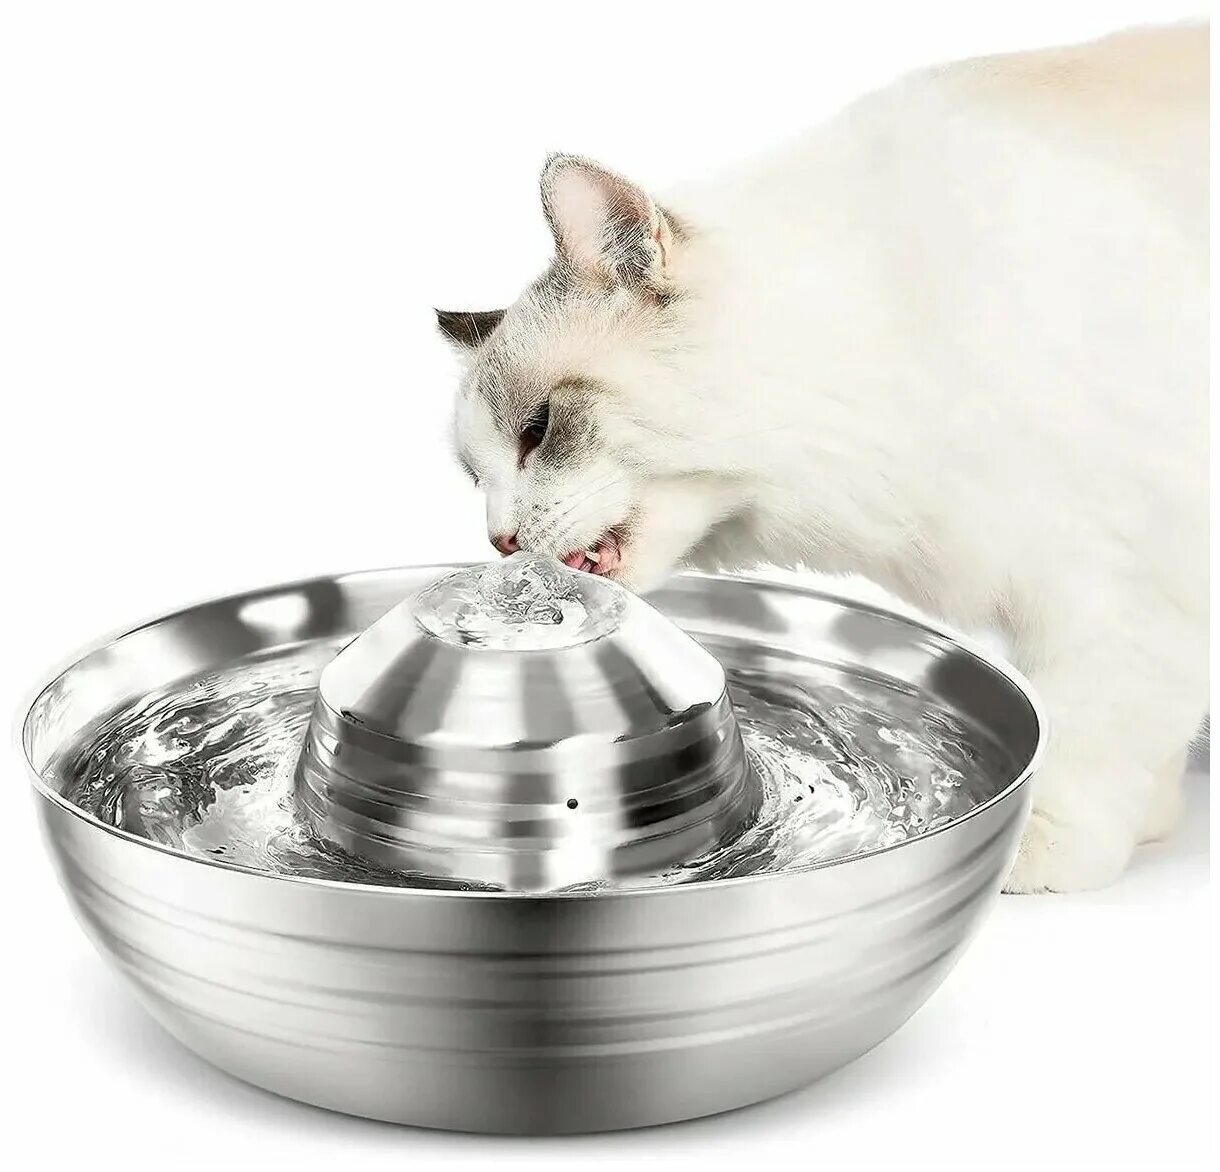 Фонтанчик для кошек. Питьевой фонтанчик для кошек. Поилка фонтан для кошек. Бесшумный автоматический электрический фонтан для кошек. Поилка фонтан для кошек купить